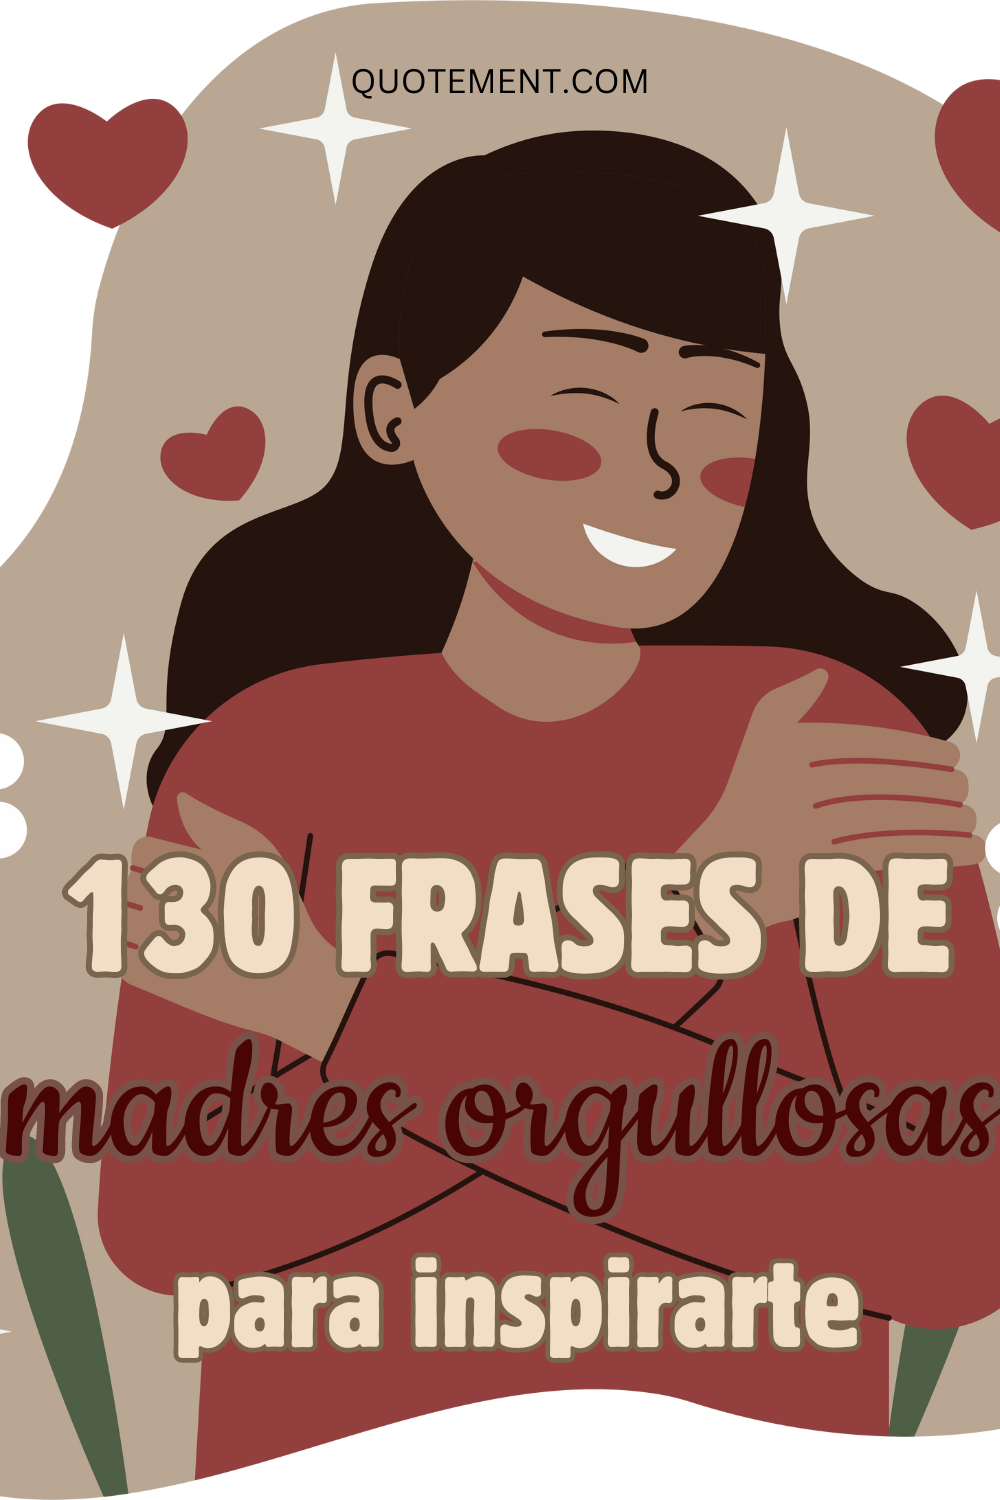 130 frases inspiradoras de madres orgullosas que te impresionarán